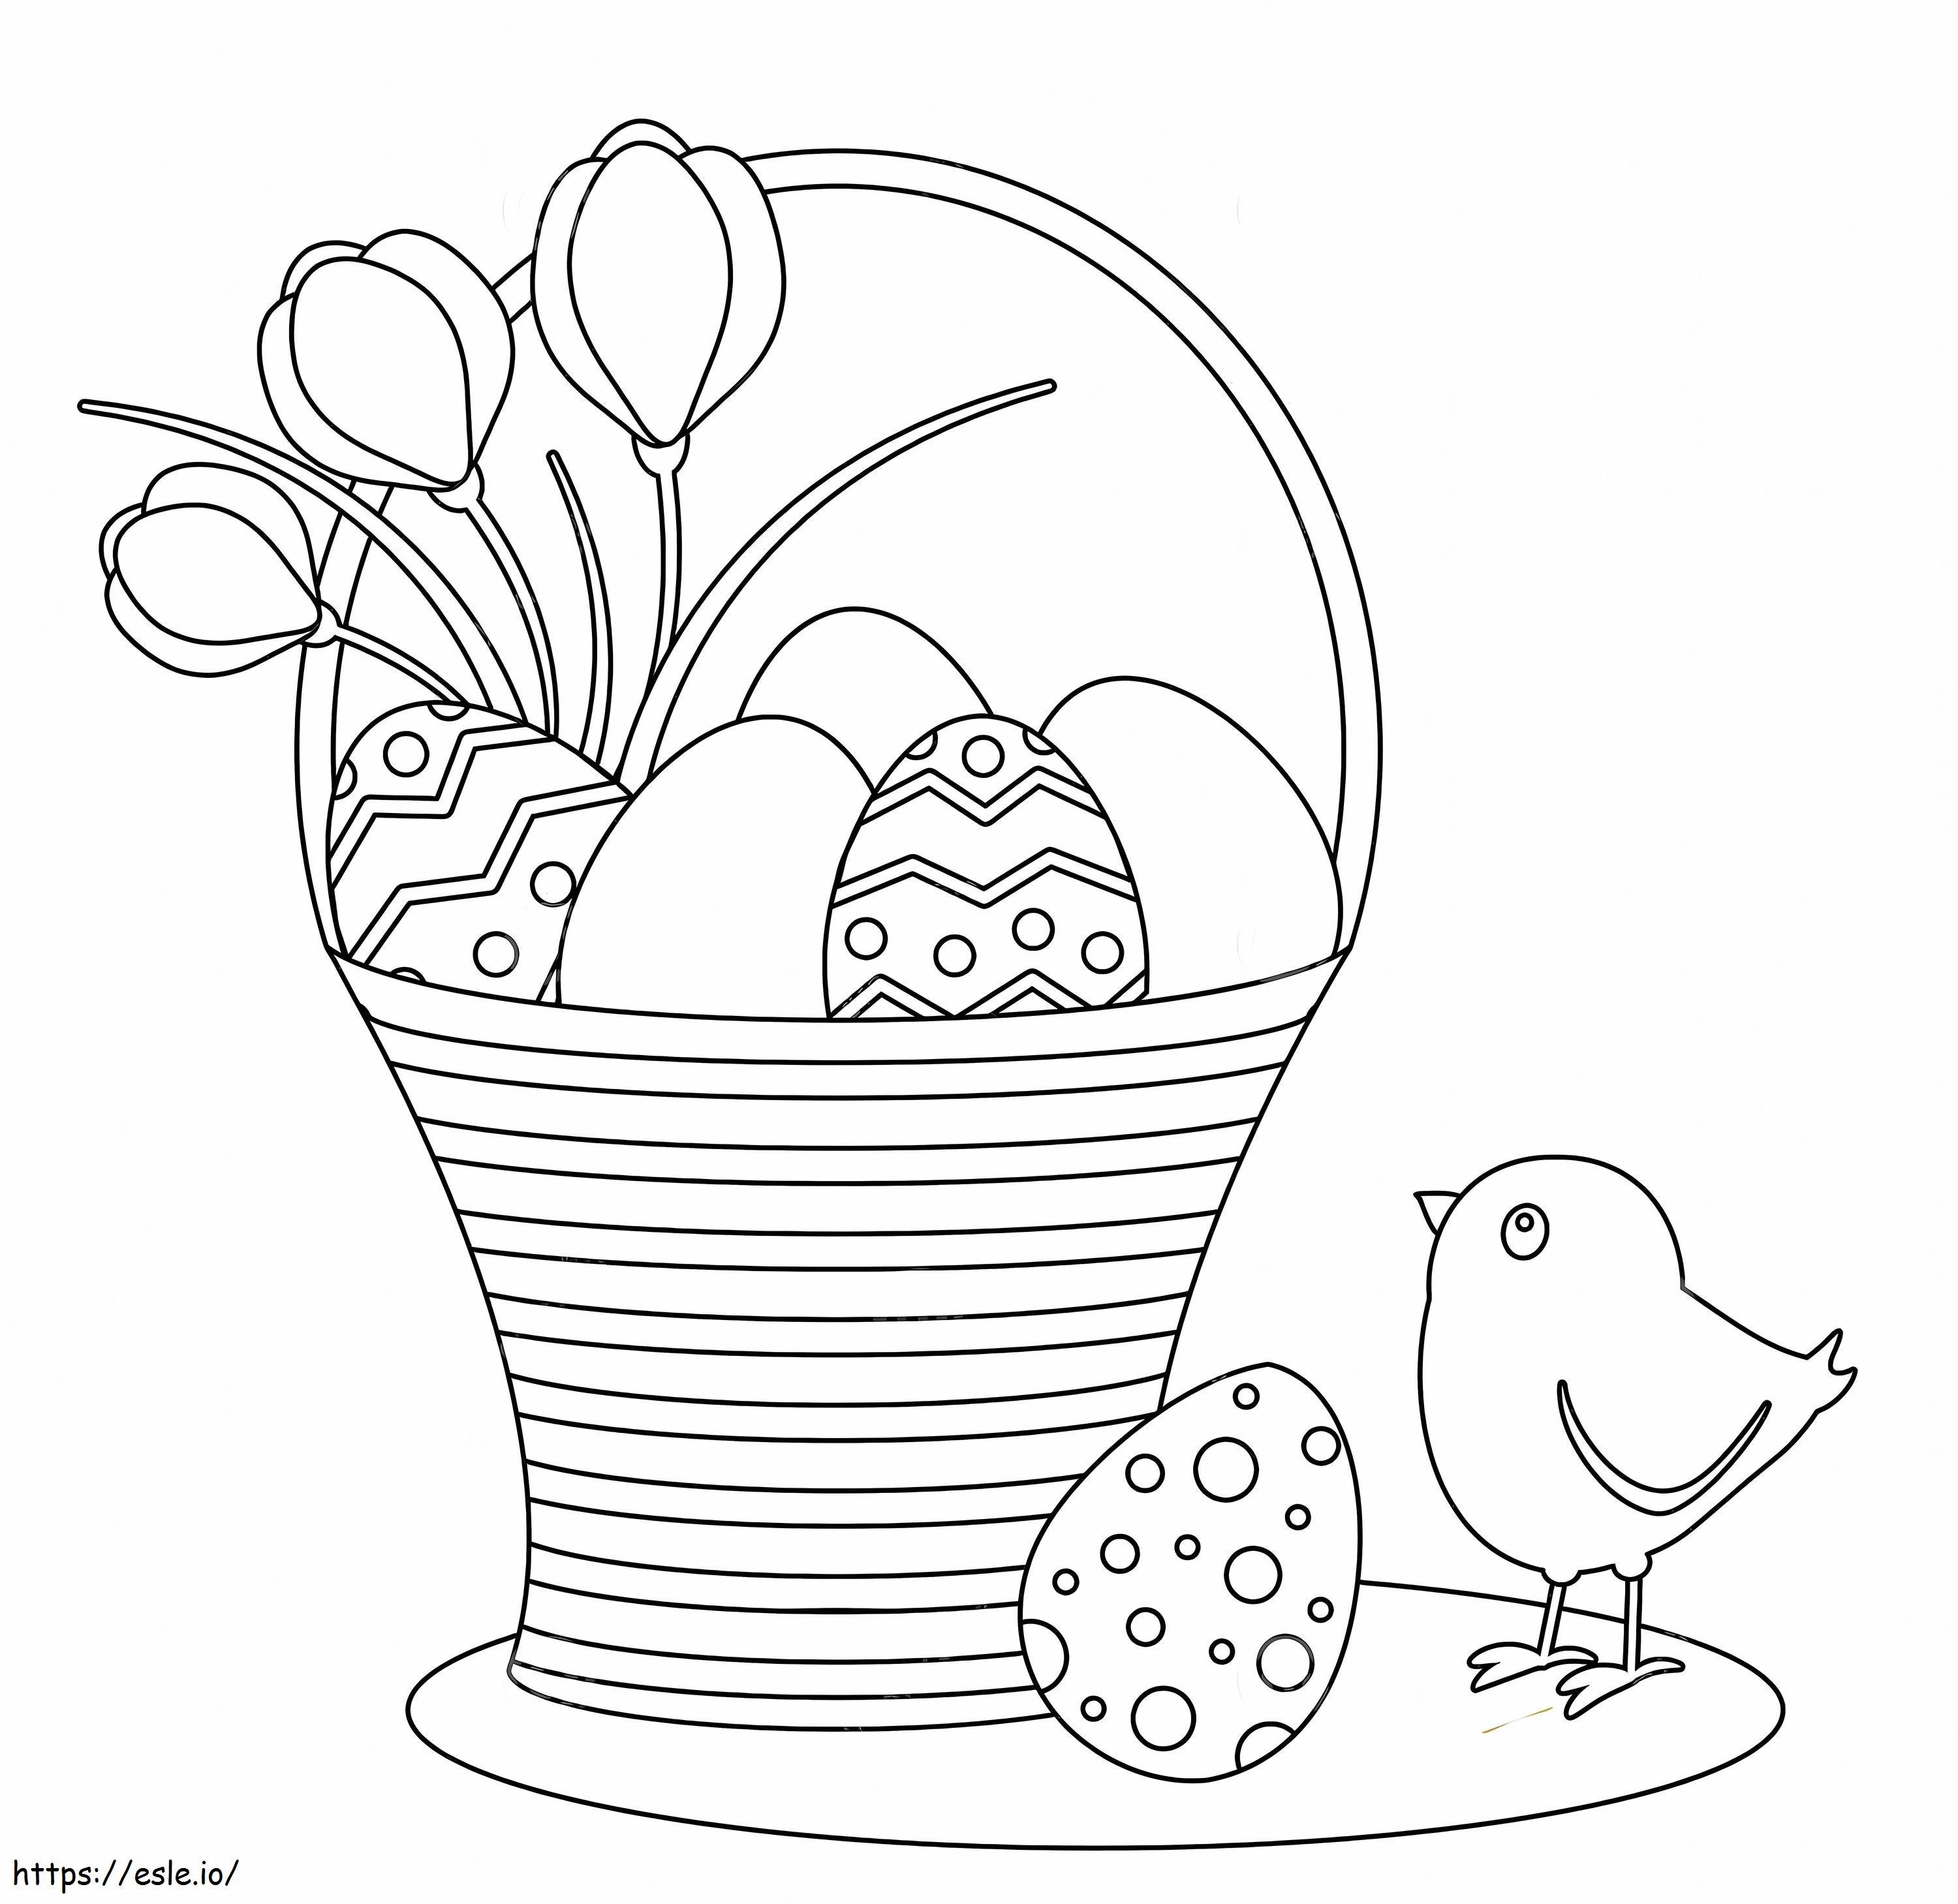 Pintinhos e cesta de ovos de páscoa para colorir